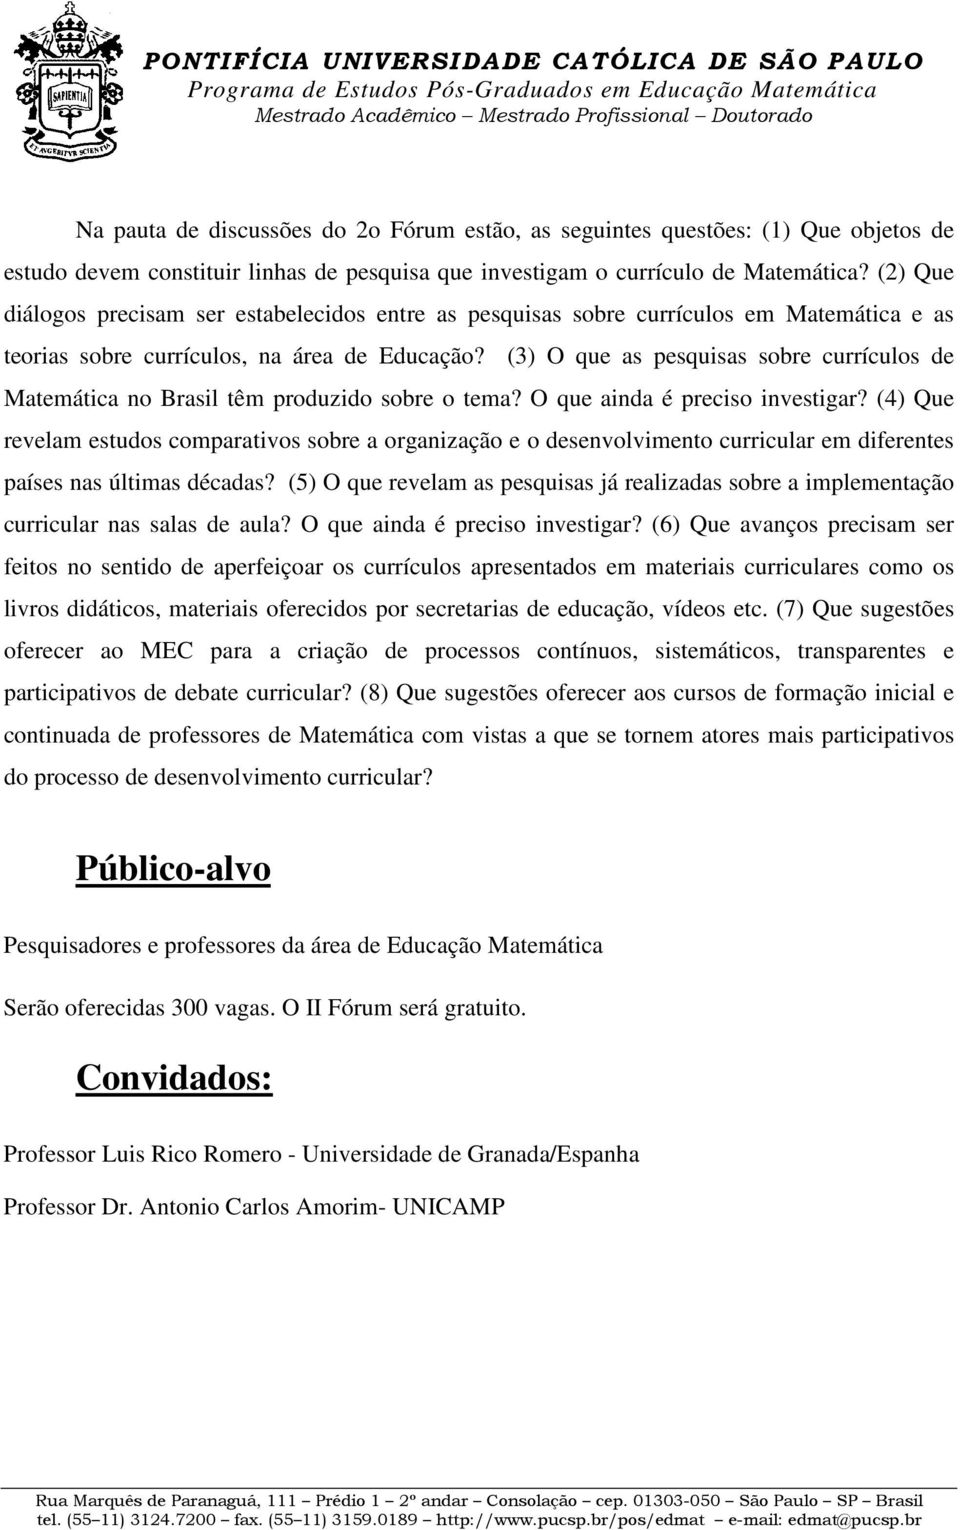 (3) O que as pesquisas sobre currículos de Matemática no Brasil têm produzido sobre o tema? O que ainda é preciso investigar?